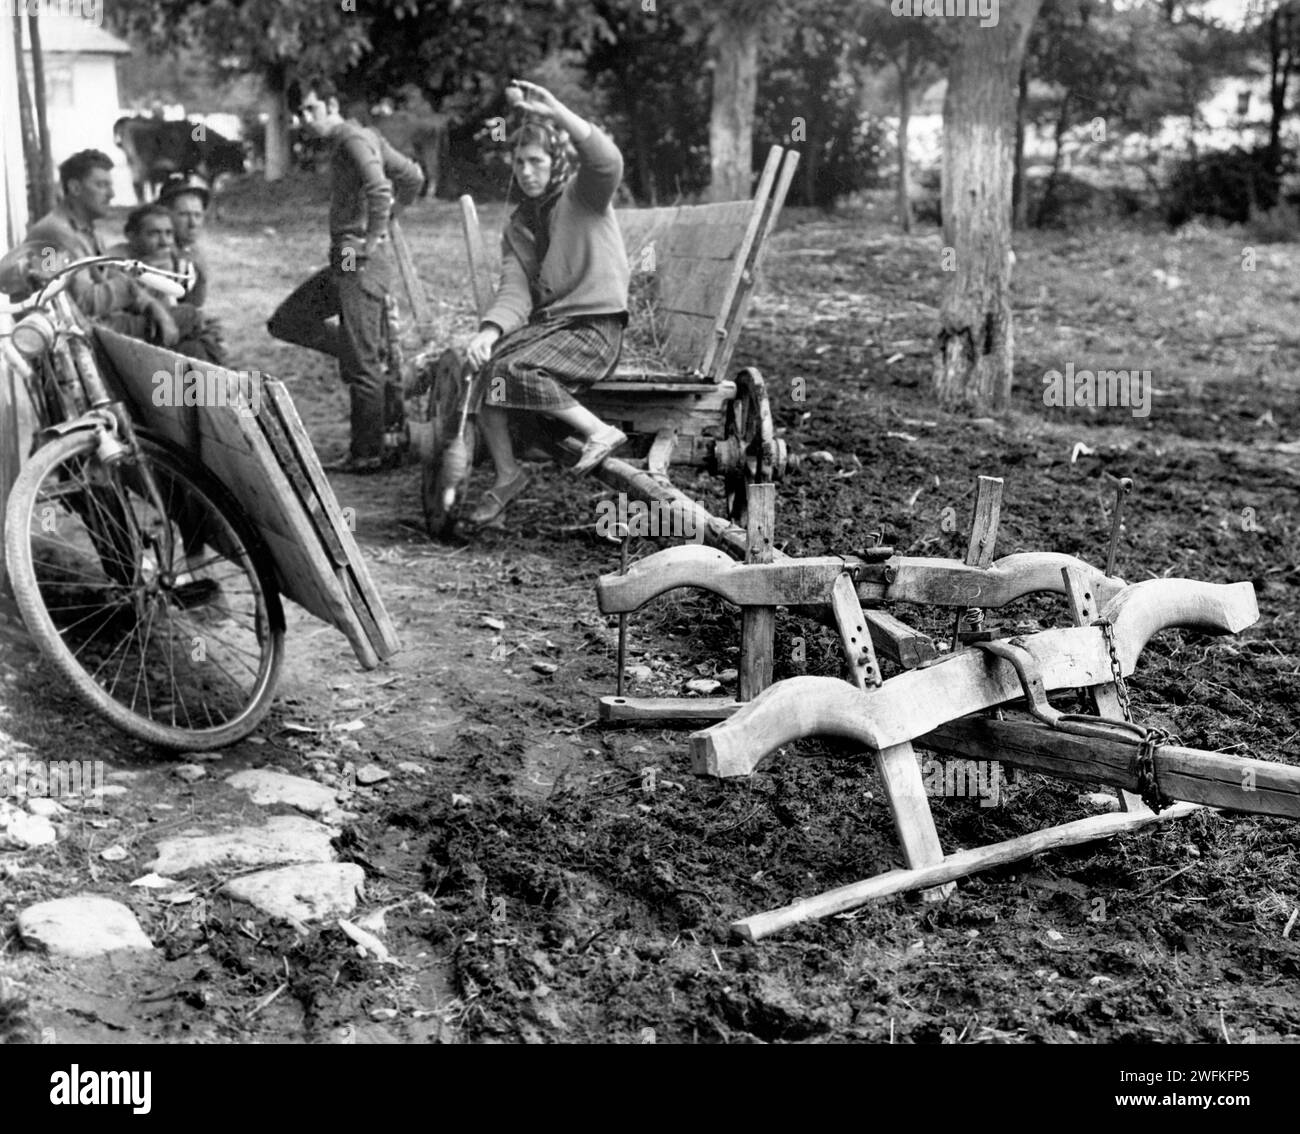 Contea di Vrancea, Repubblica Socialista di Romania, ca. 1978. Contadini che aspettano fuori da un mulino locale. Forcelle collegate a un carrello. Foto Stock